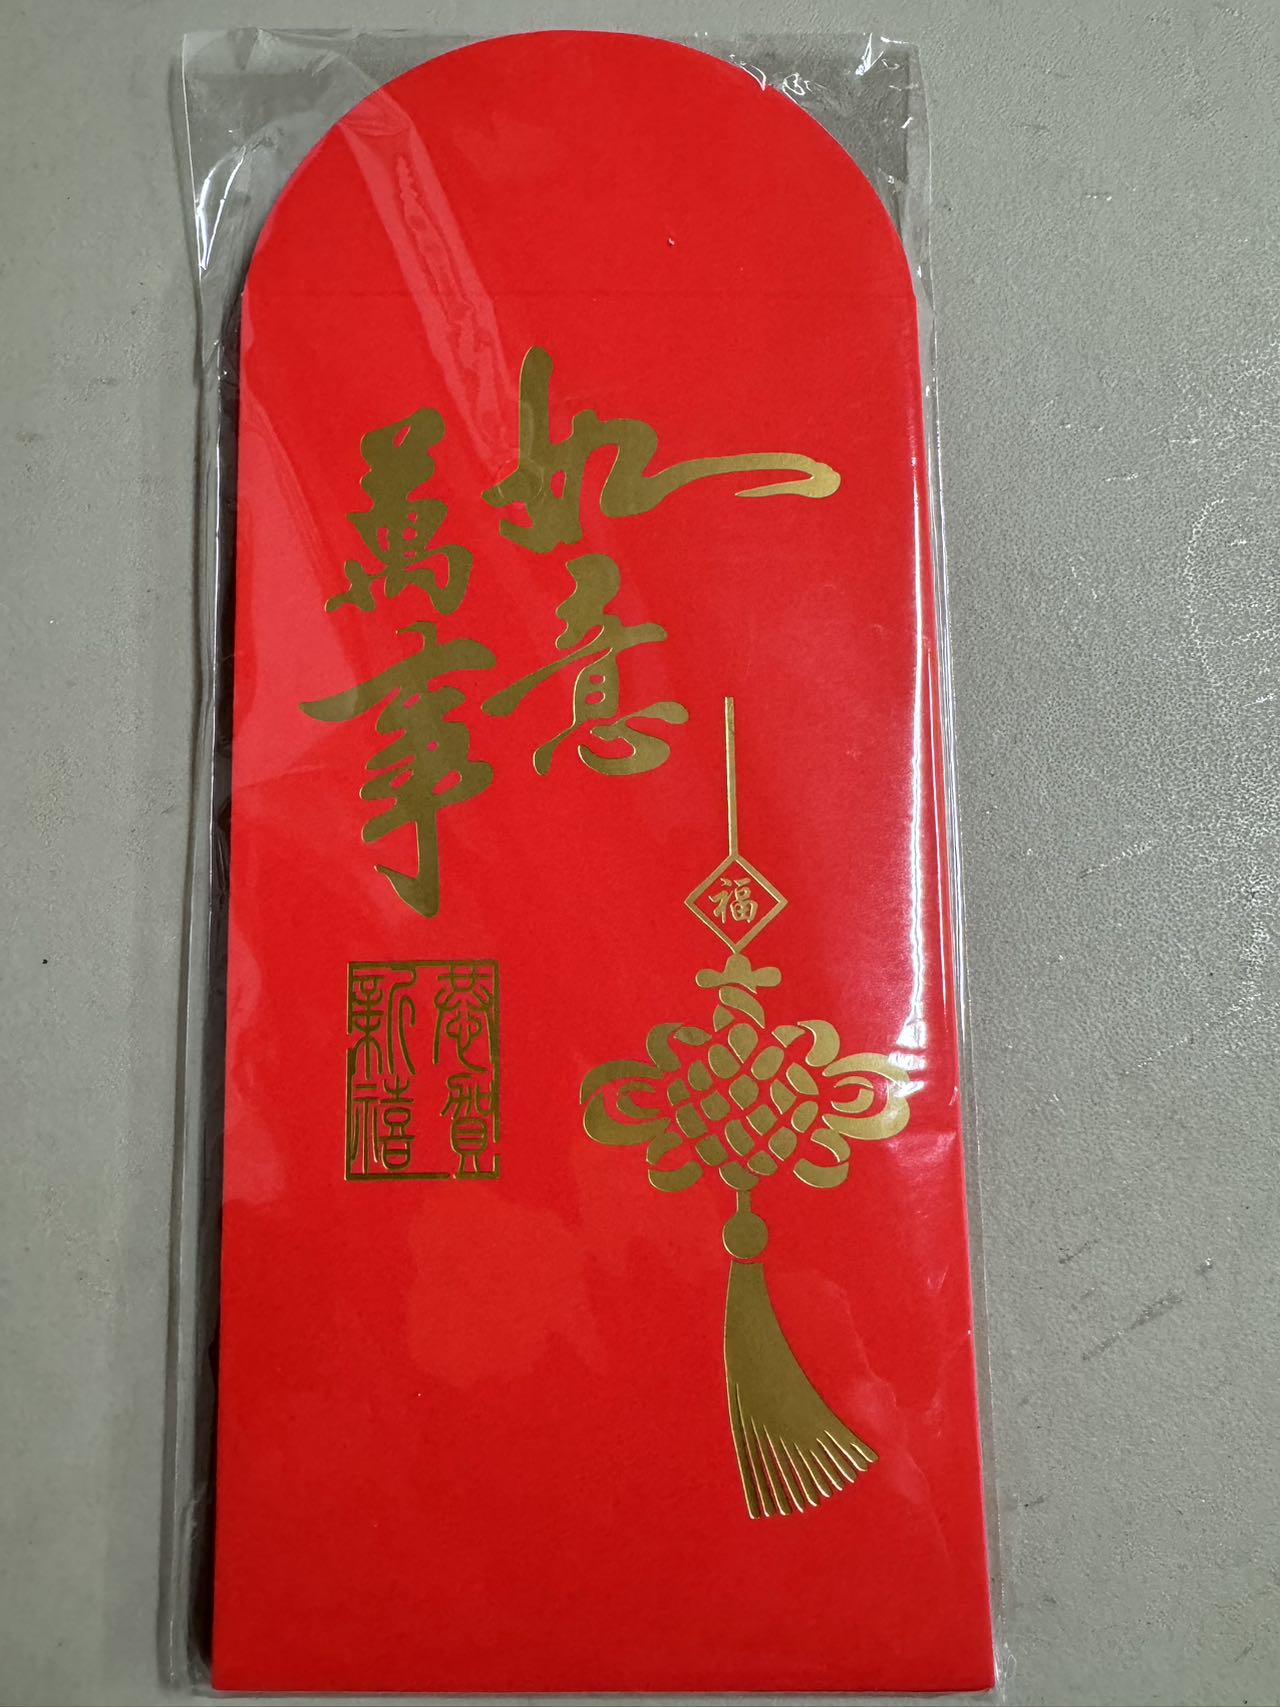 ⚡️Leishi Fung (red envelope bag, 6 pcs/bag inside)* 3